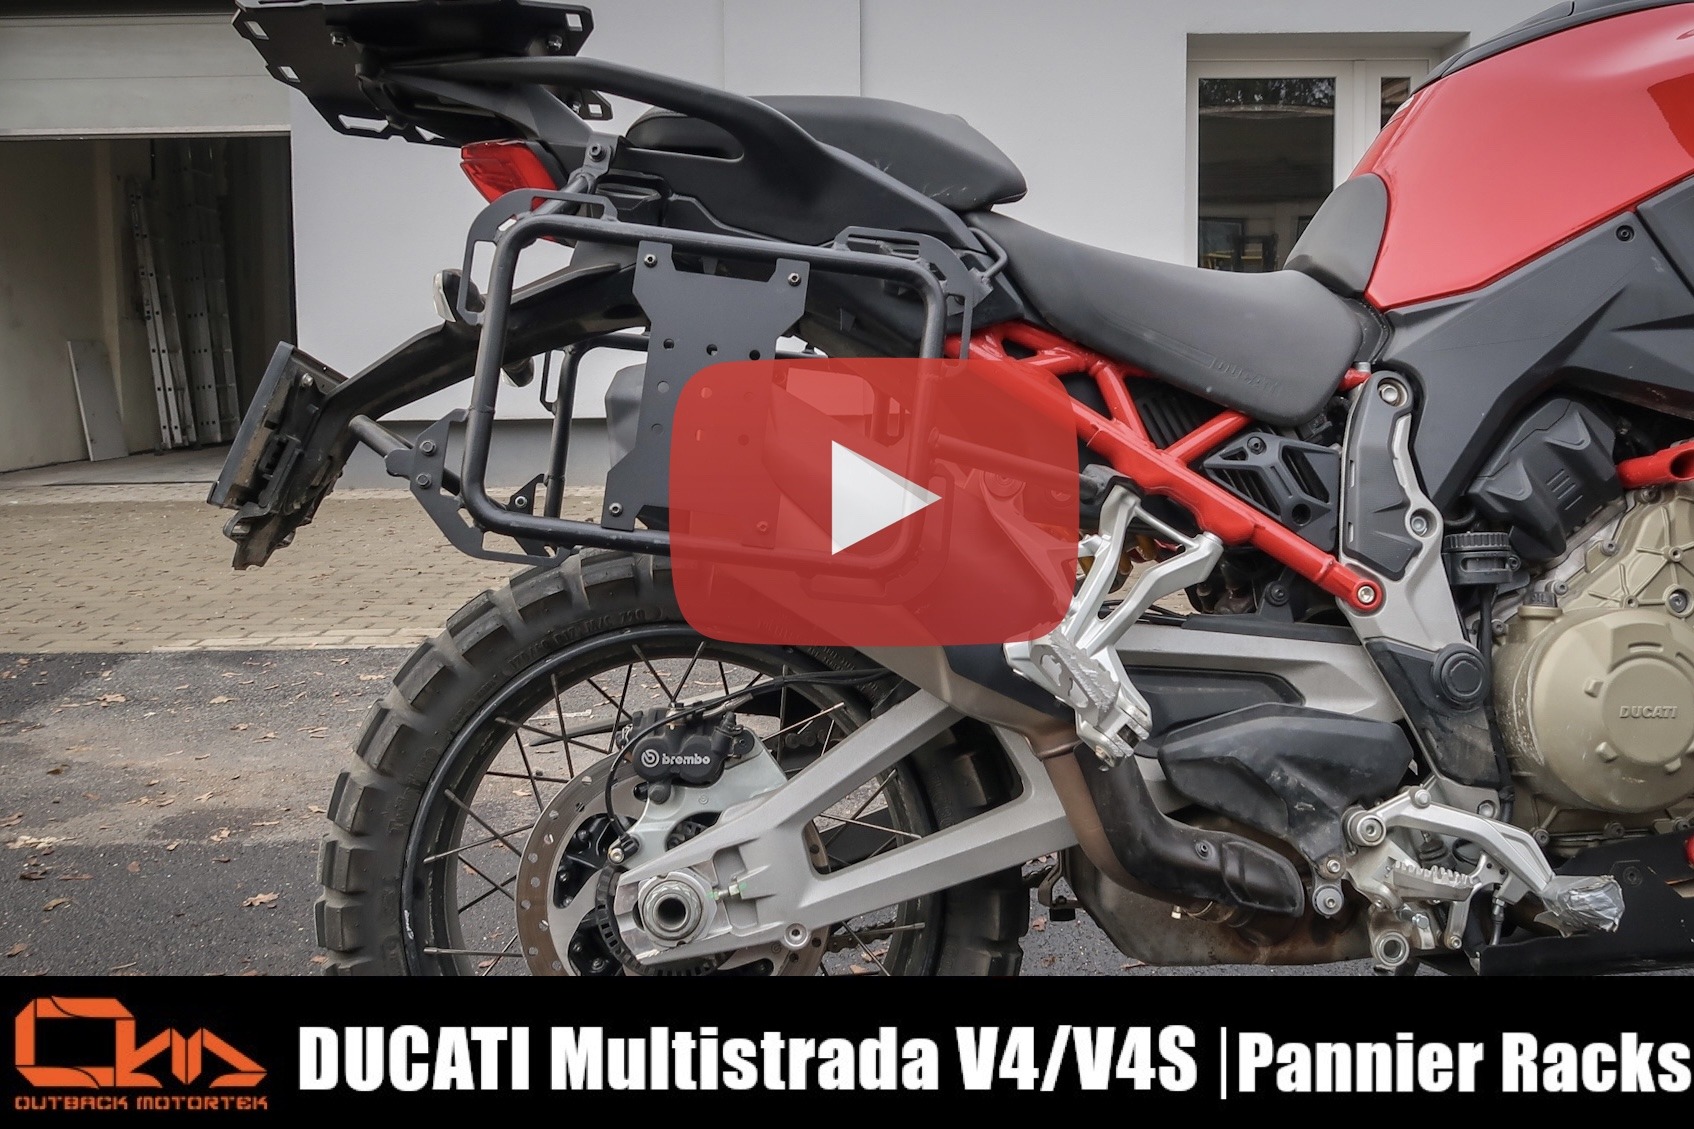 Ducati Multistrada Pannier Racks Installation Video